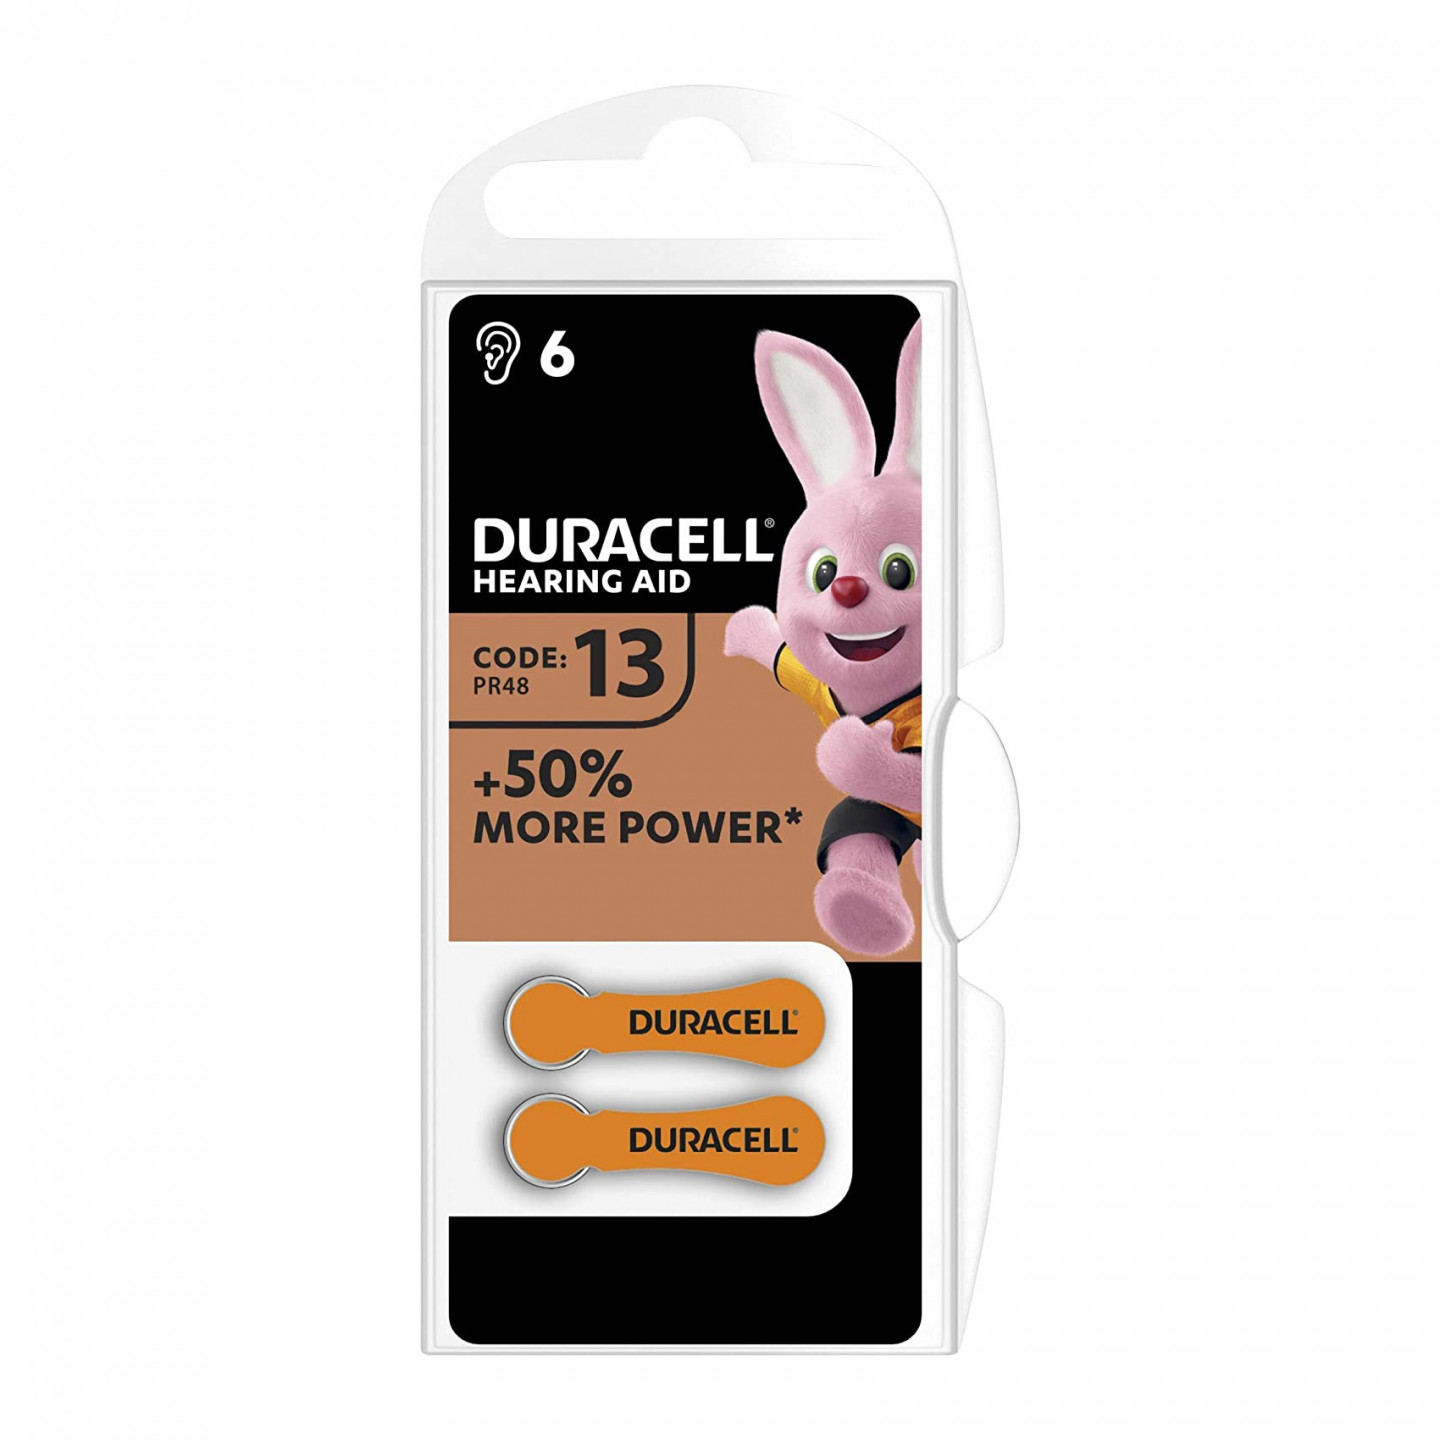 Batterie per apparecchi acustici Duracell Easytab formato 13 arancio 6pz